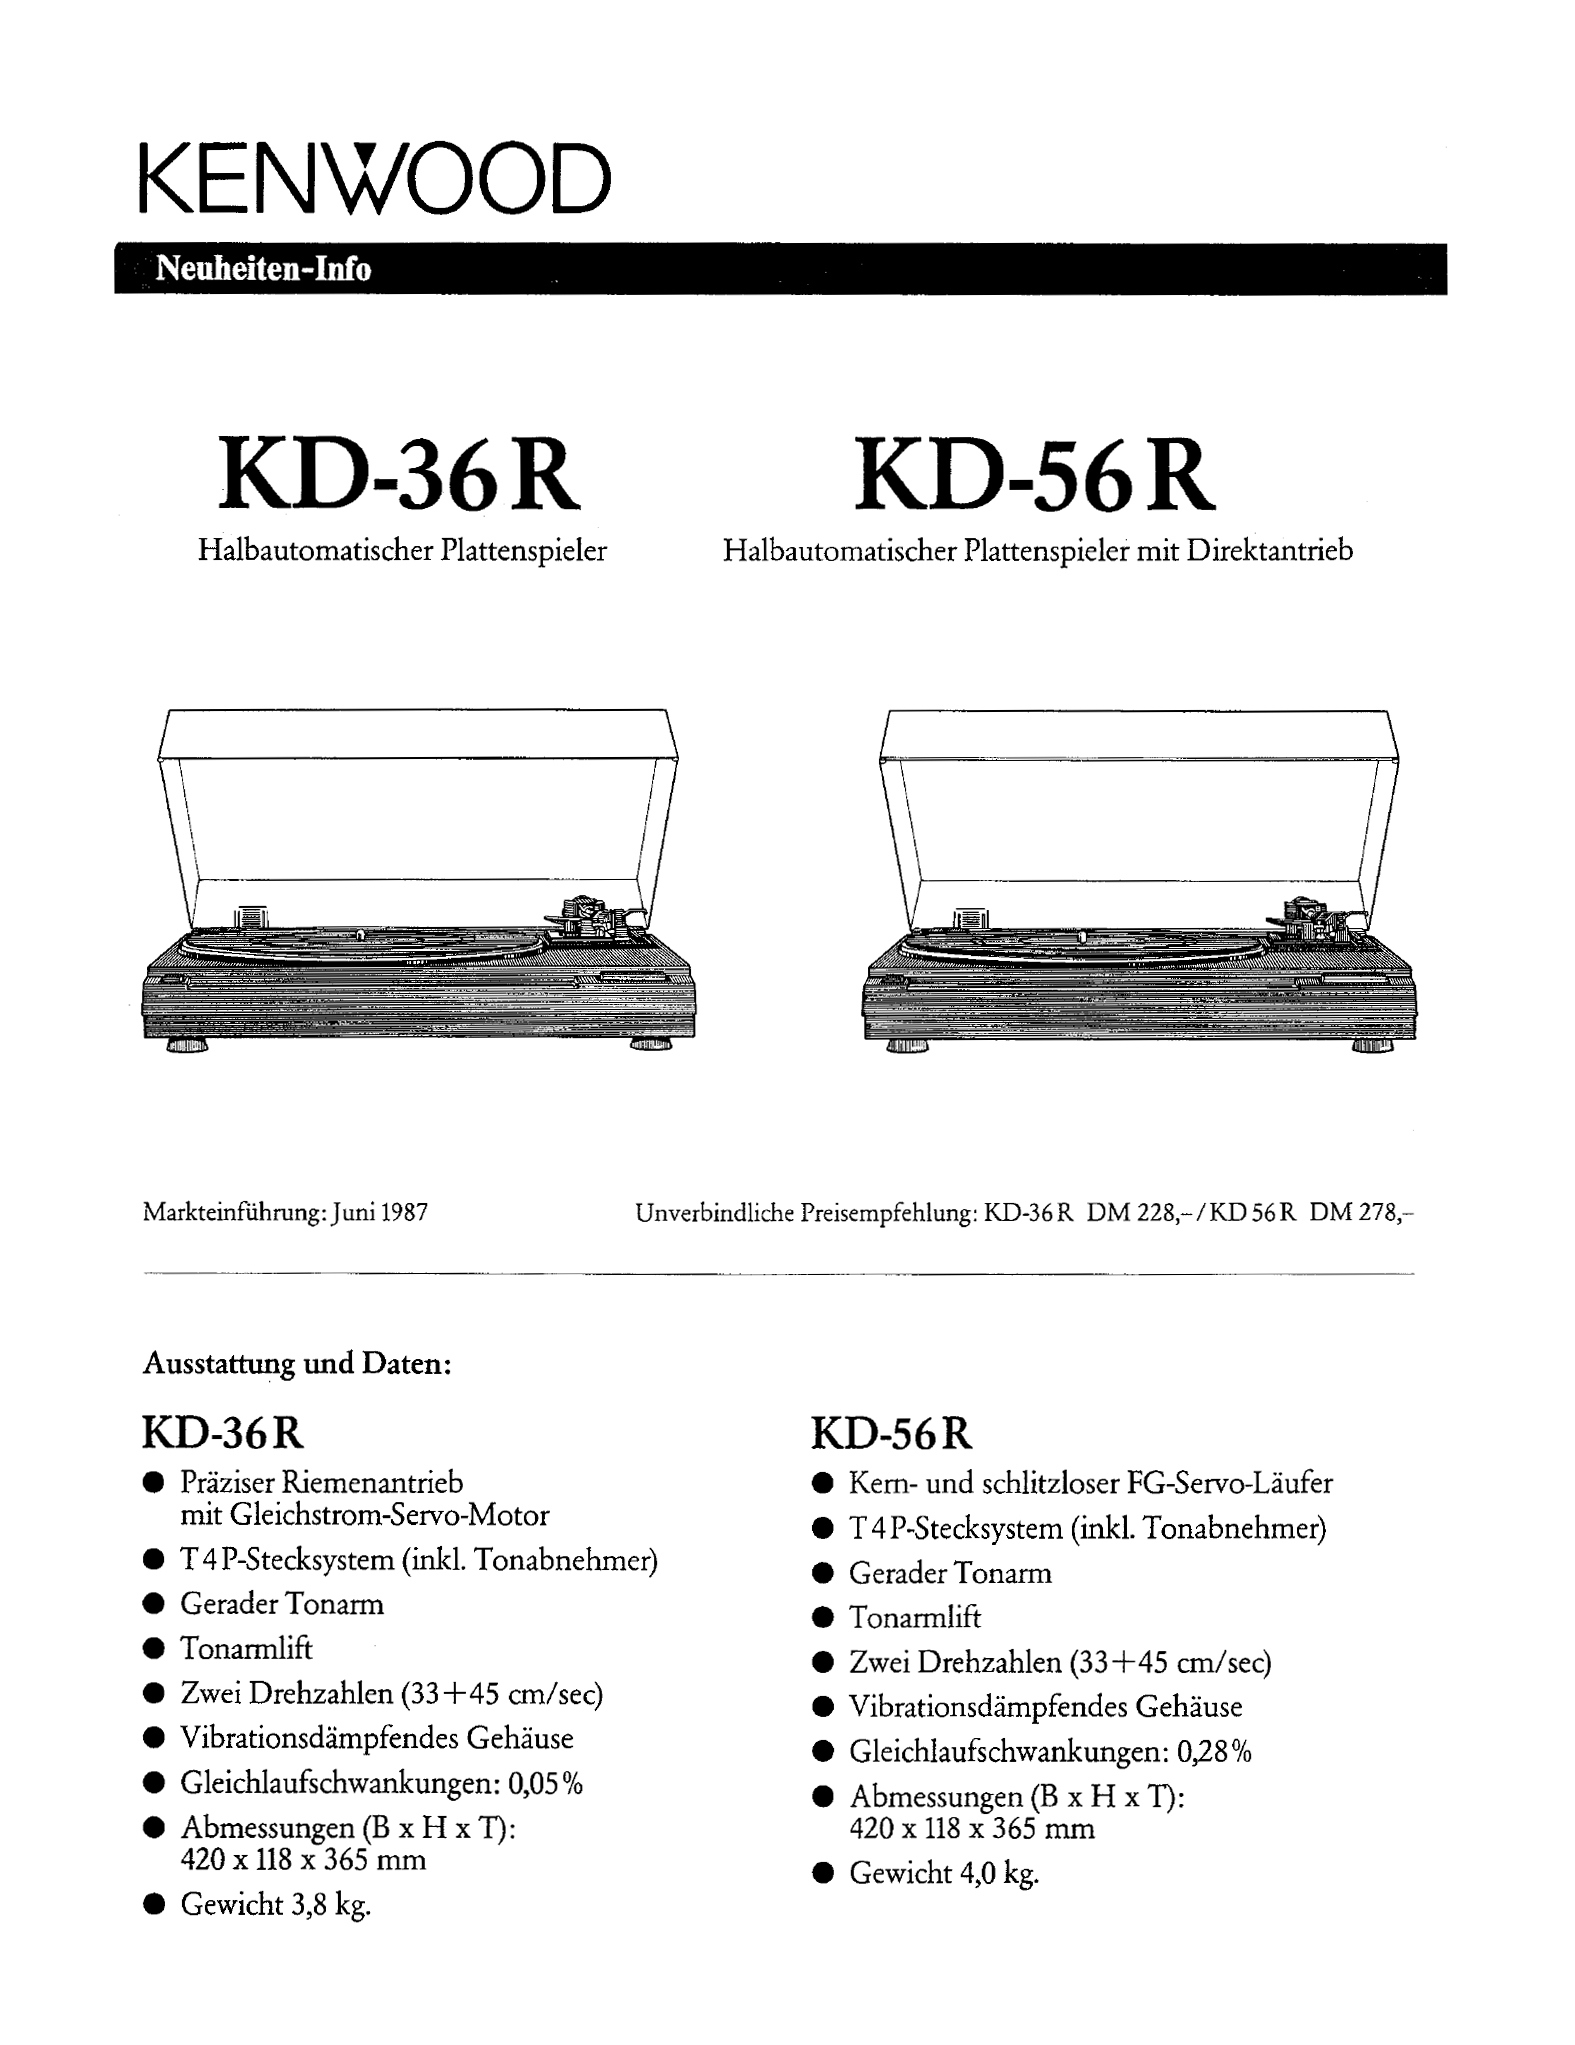 Kenwood KD-36-56 R-Prospekt-1987.jpg